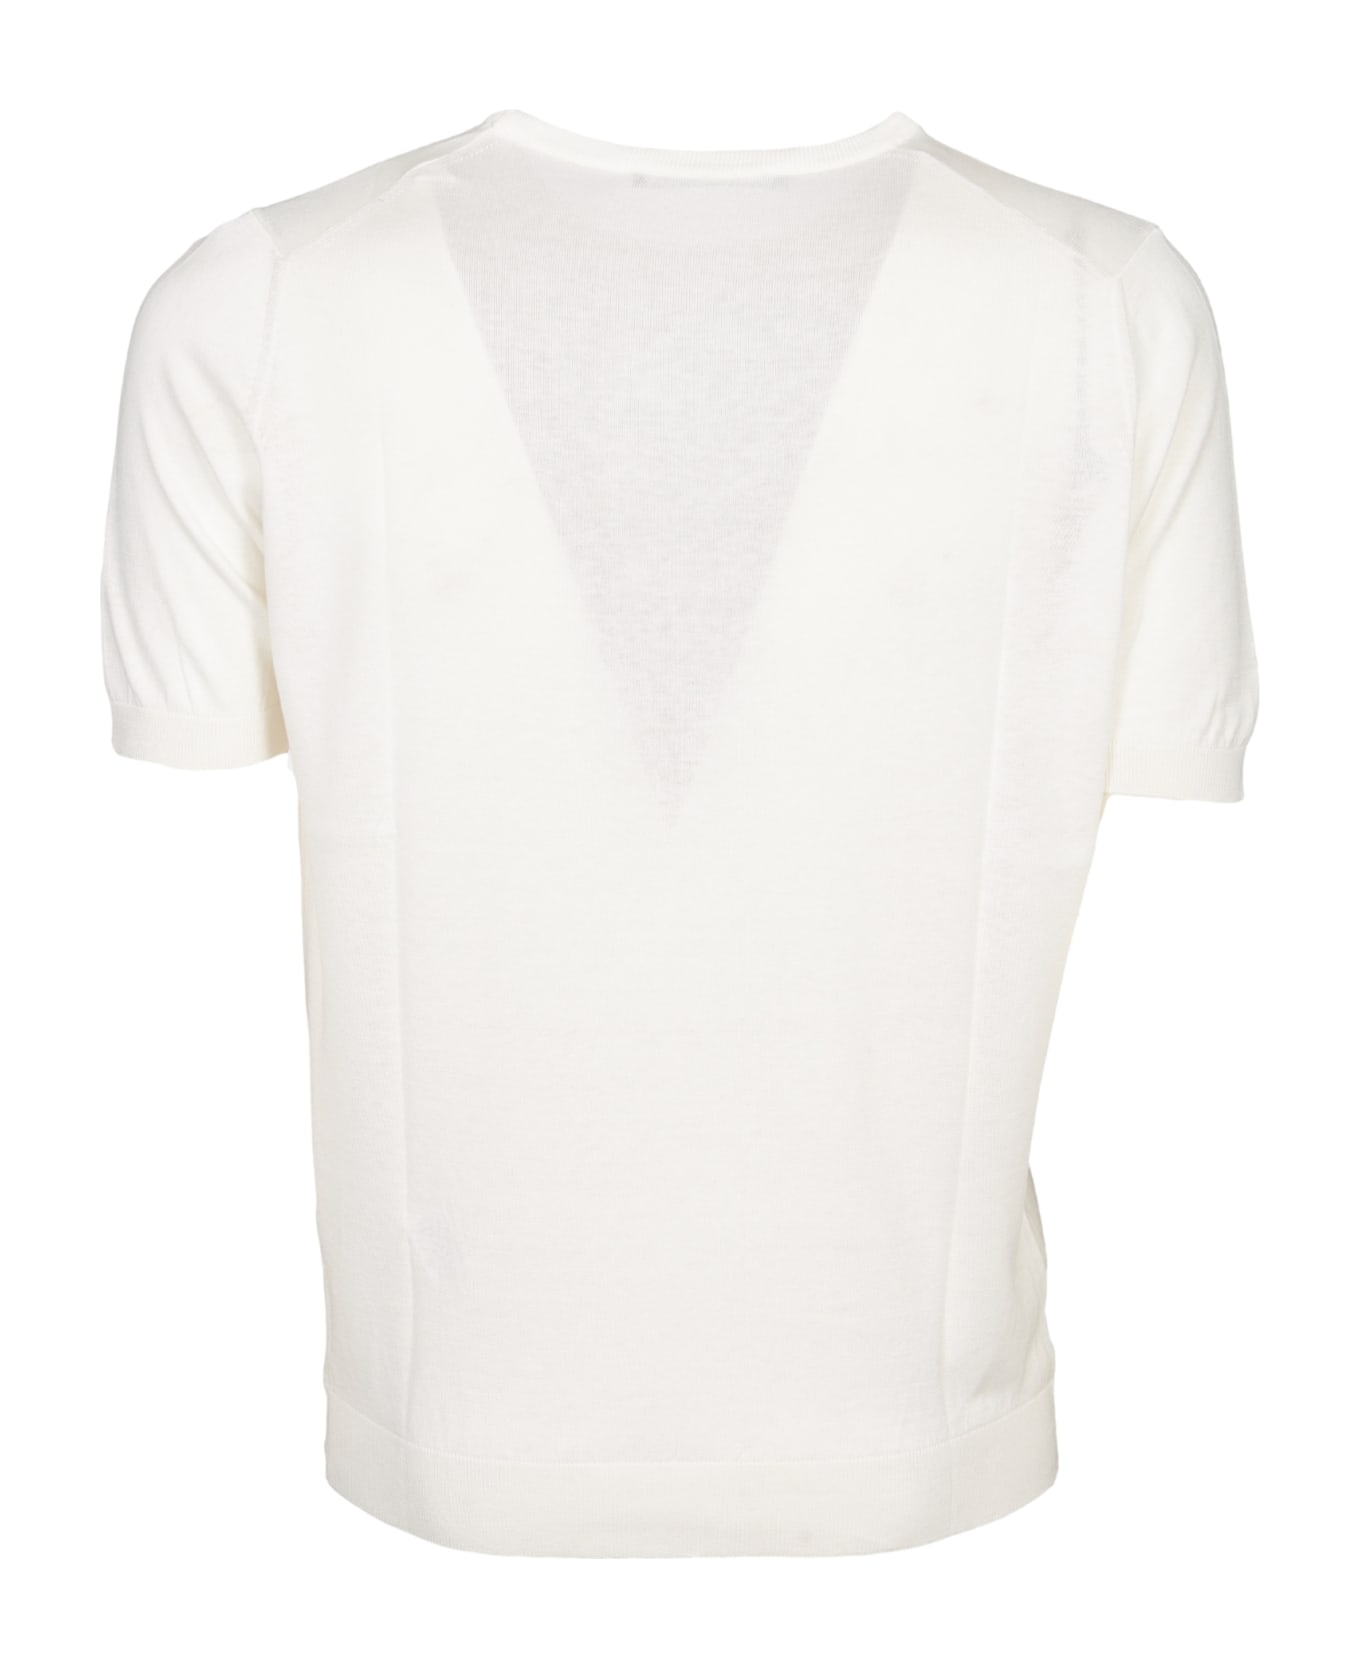 Tagliatore T-shirt - Cream